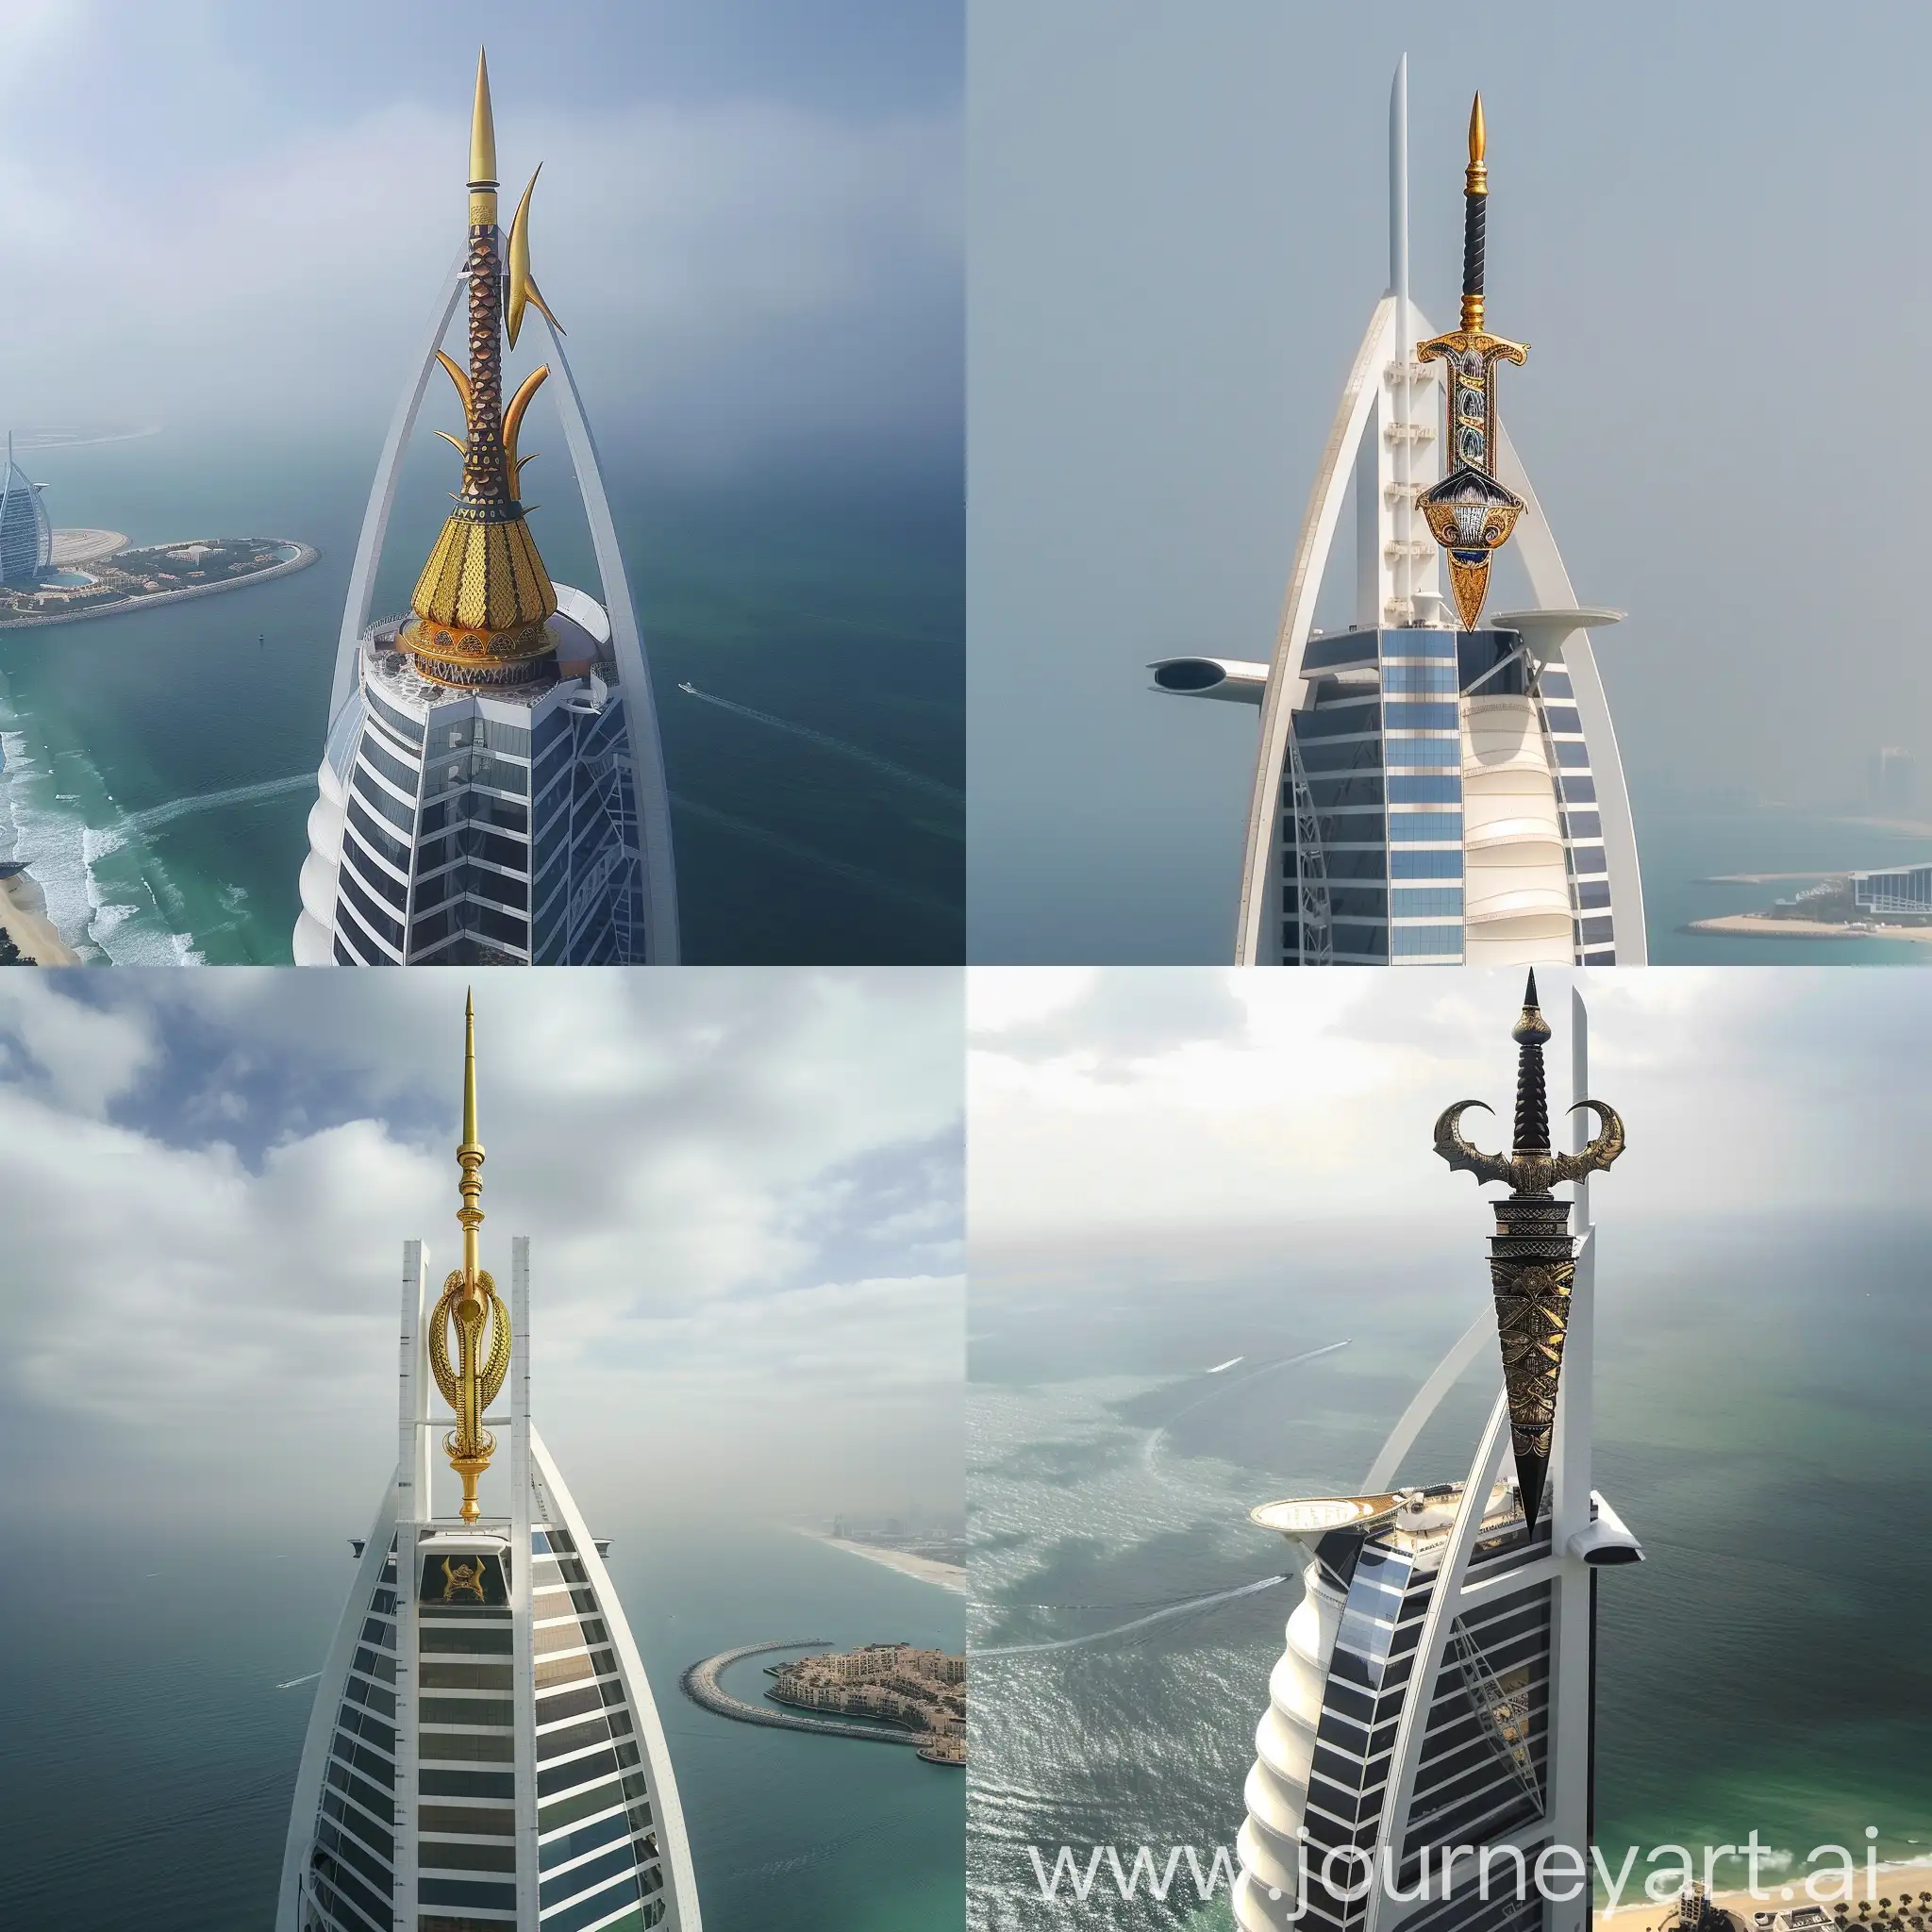 Malay-Keris-atop-the-Iconic-Burj-Al-Arab